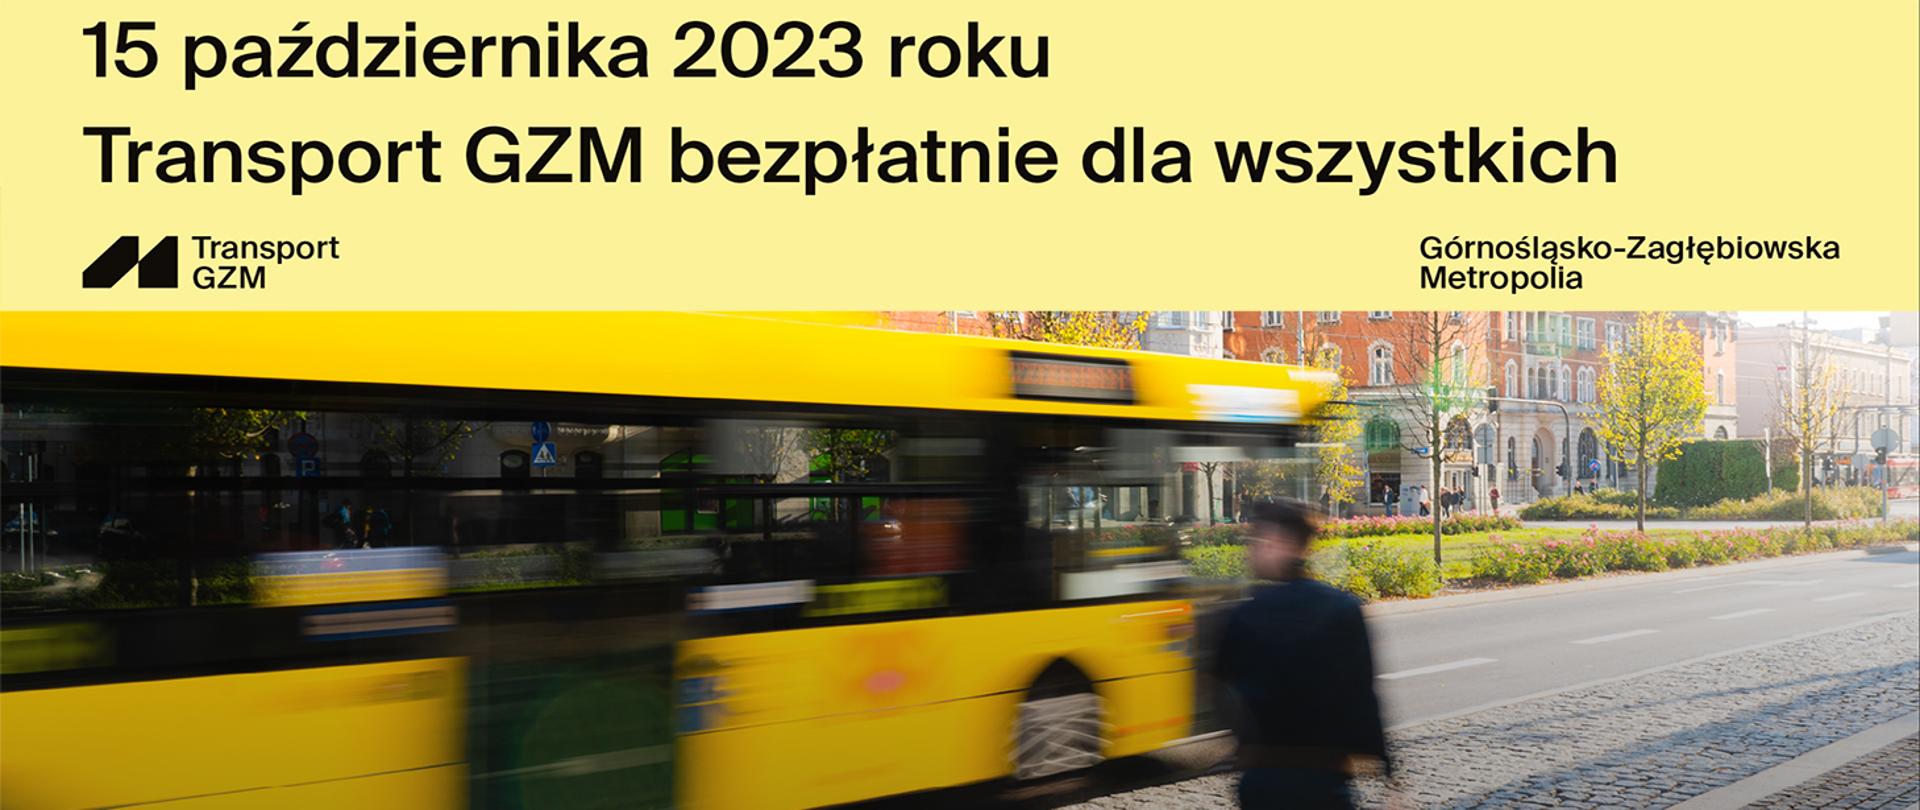 Rozmazana osoba wsiadająca do żółtego autobusu oraz informacja o bezpłatnym transporcie GZM w dniu wyborów